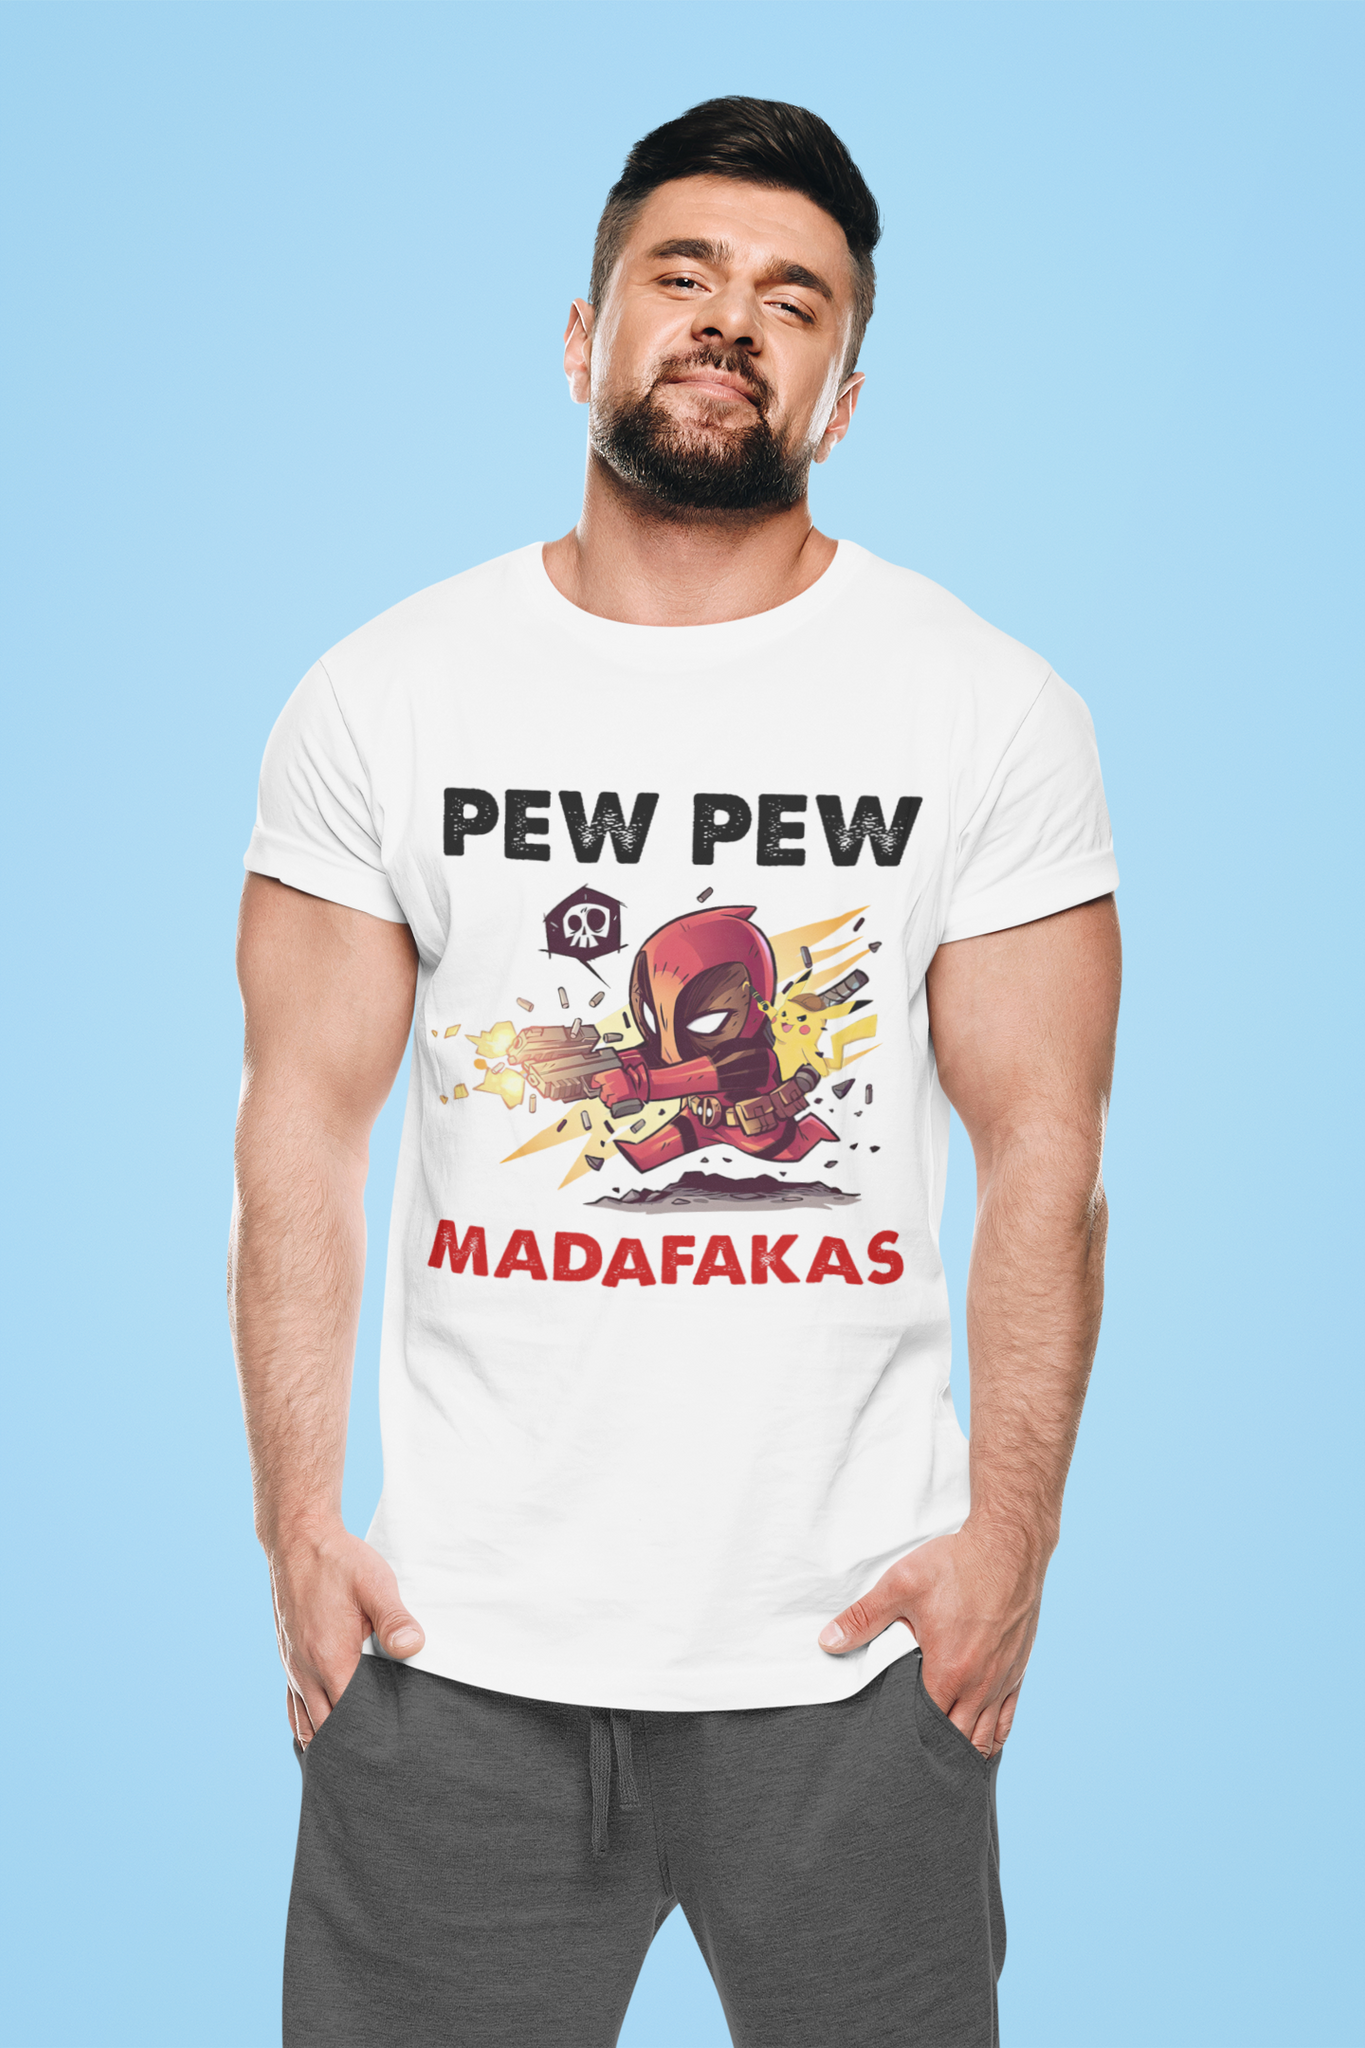 Deadpool T Shirt, Pew Pew Madafakas Tshirt, Superhero Deadpool T Shirt